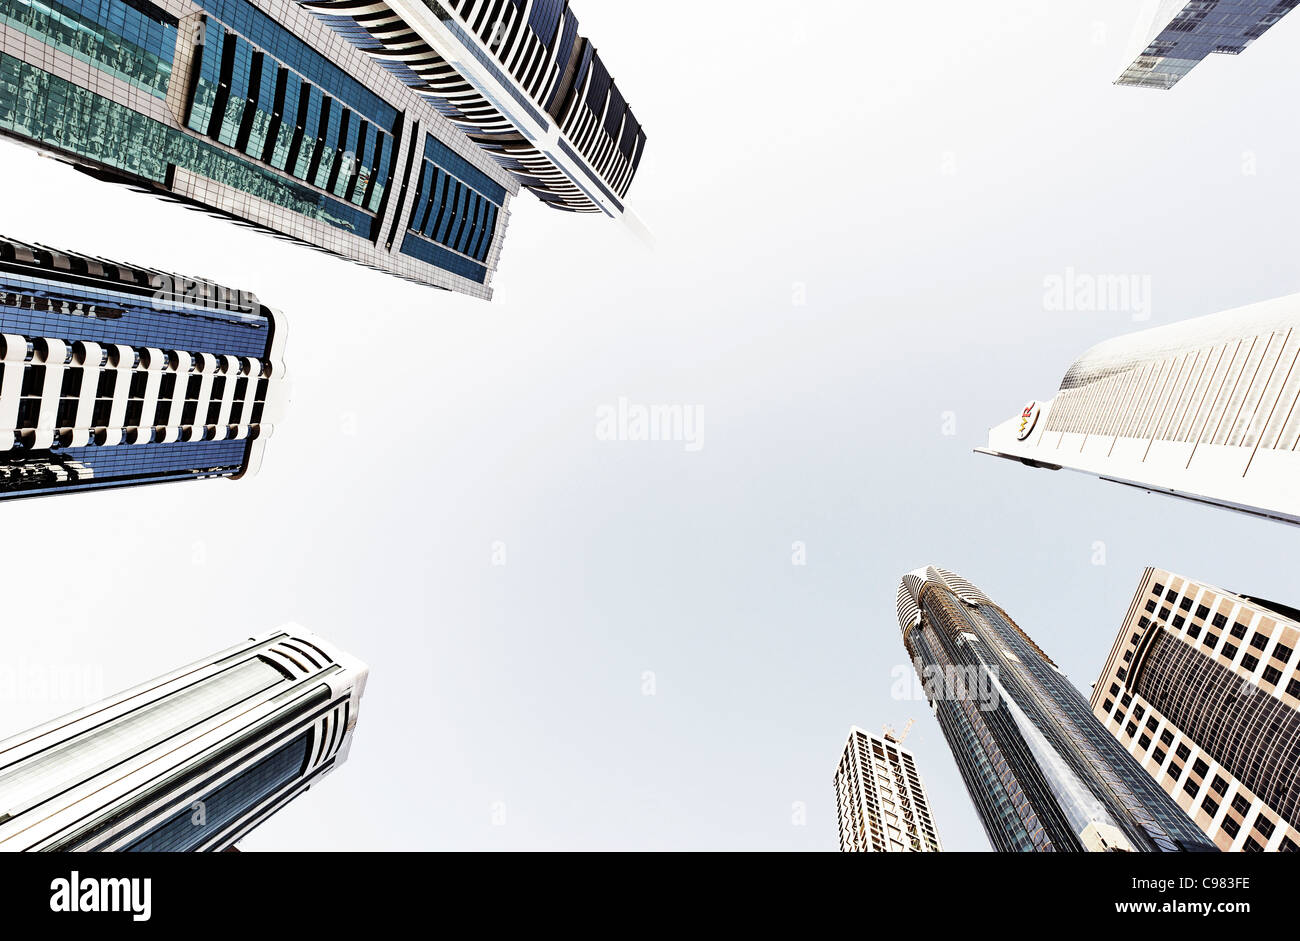 Türme, Hochhäuser, Hotels, moderne Architektur, Financial District, Sheikh Zayed Road, Dubai, Vereinigte Arabische Emirate Stockfoto